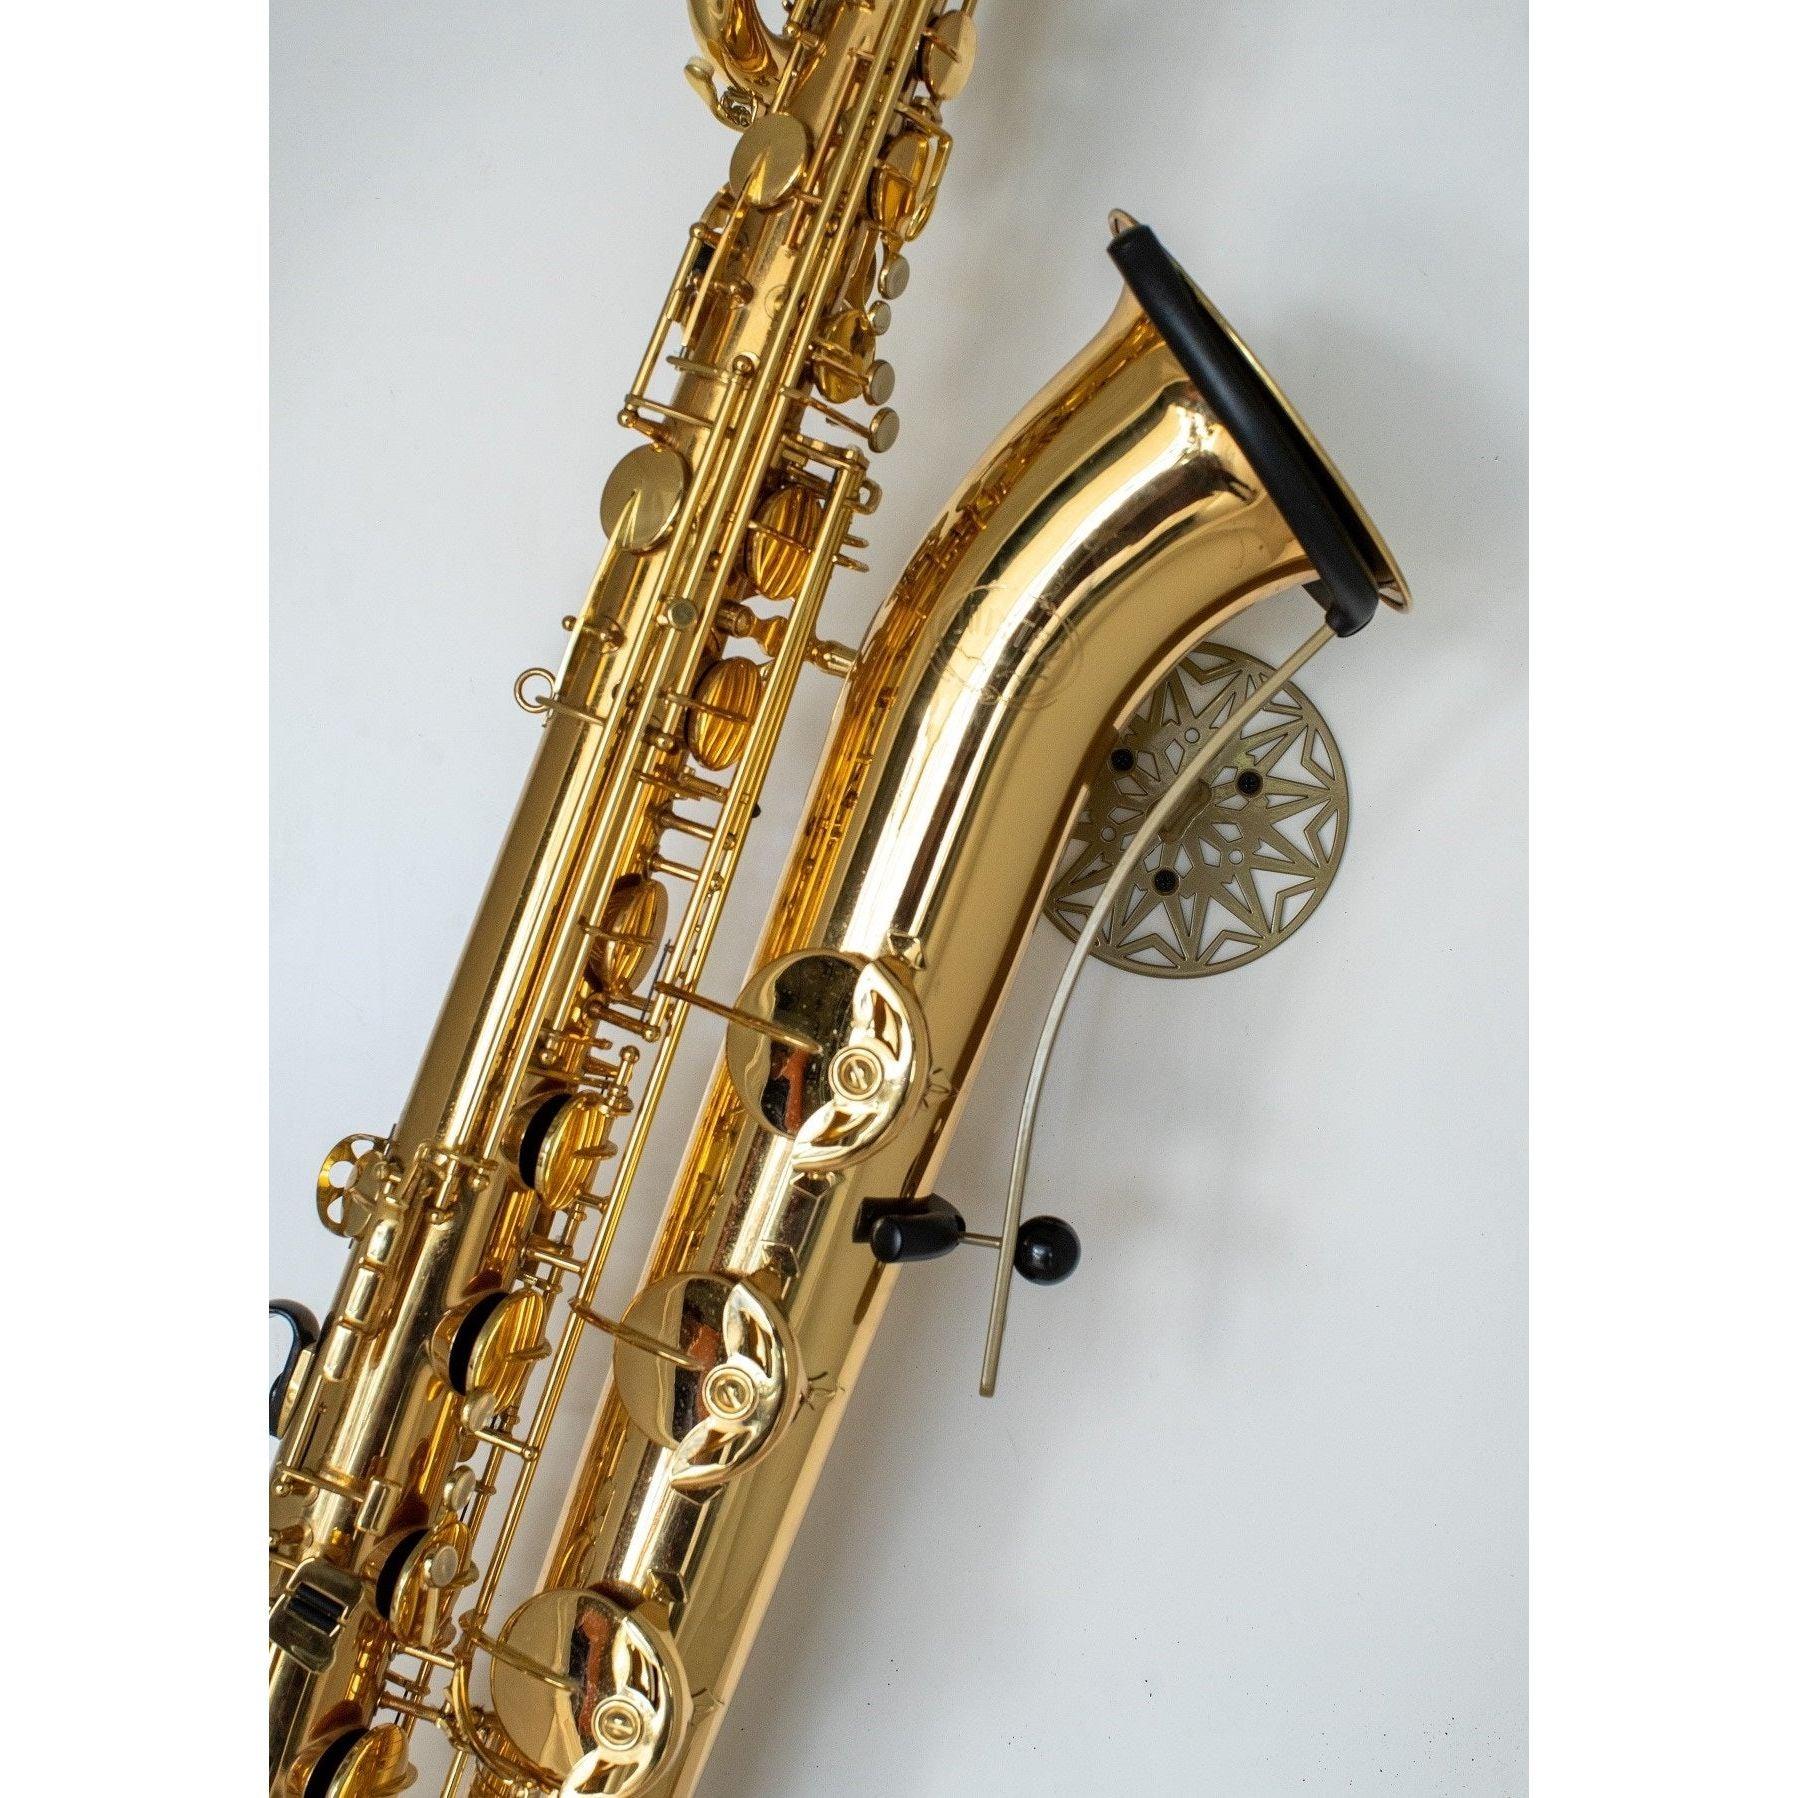  baritone saxophone in wallmount  Samba on white wall by Locoparasaxo.com